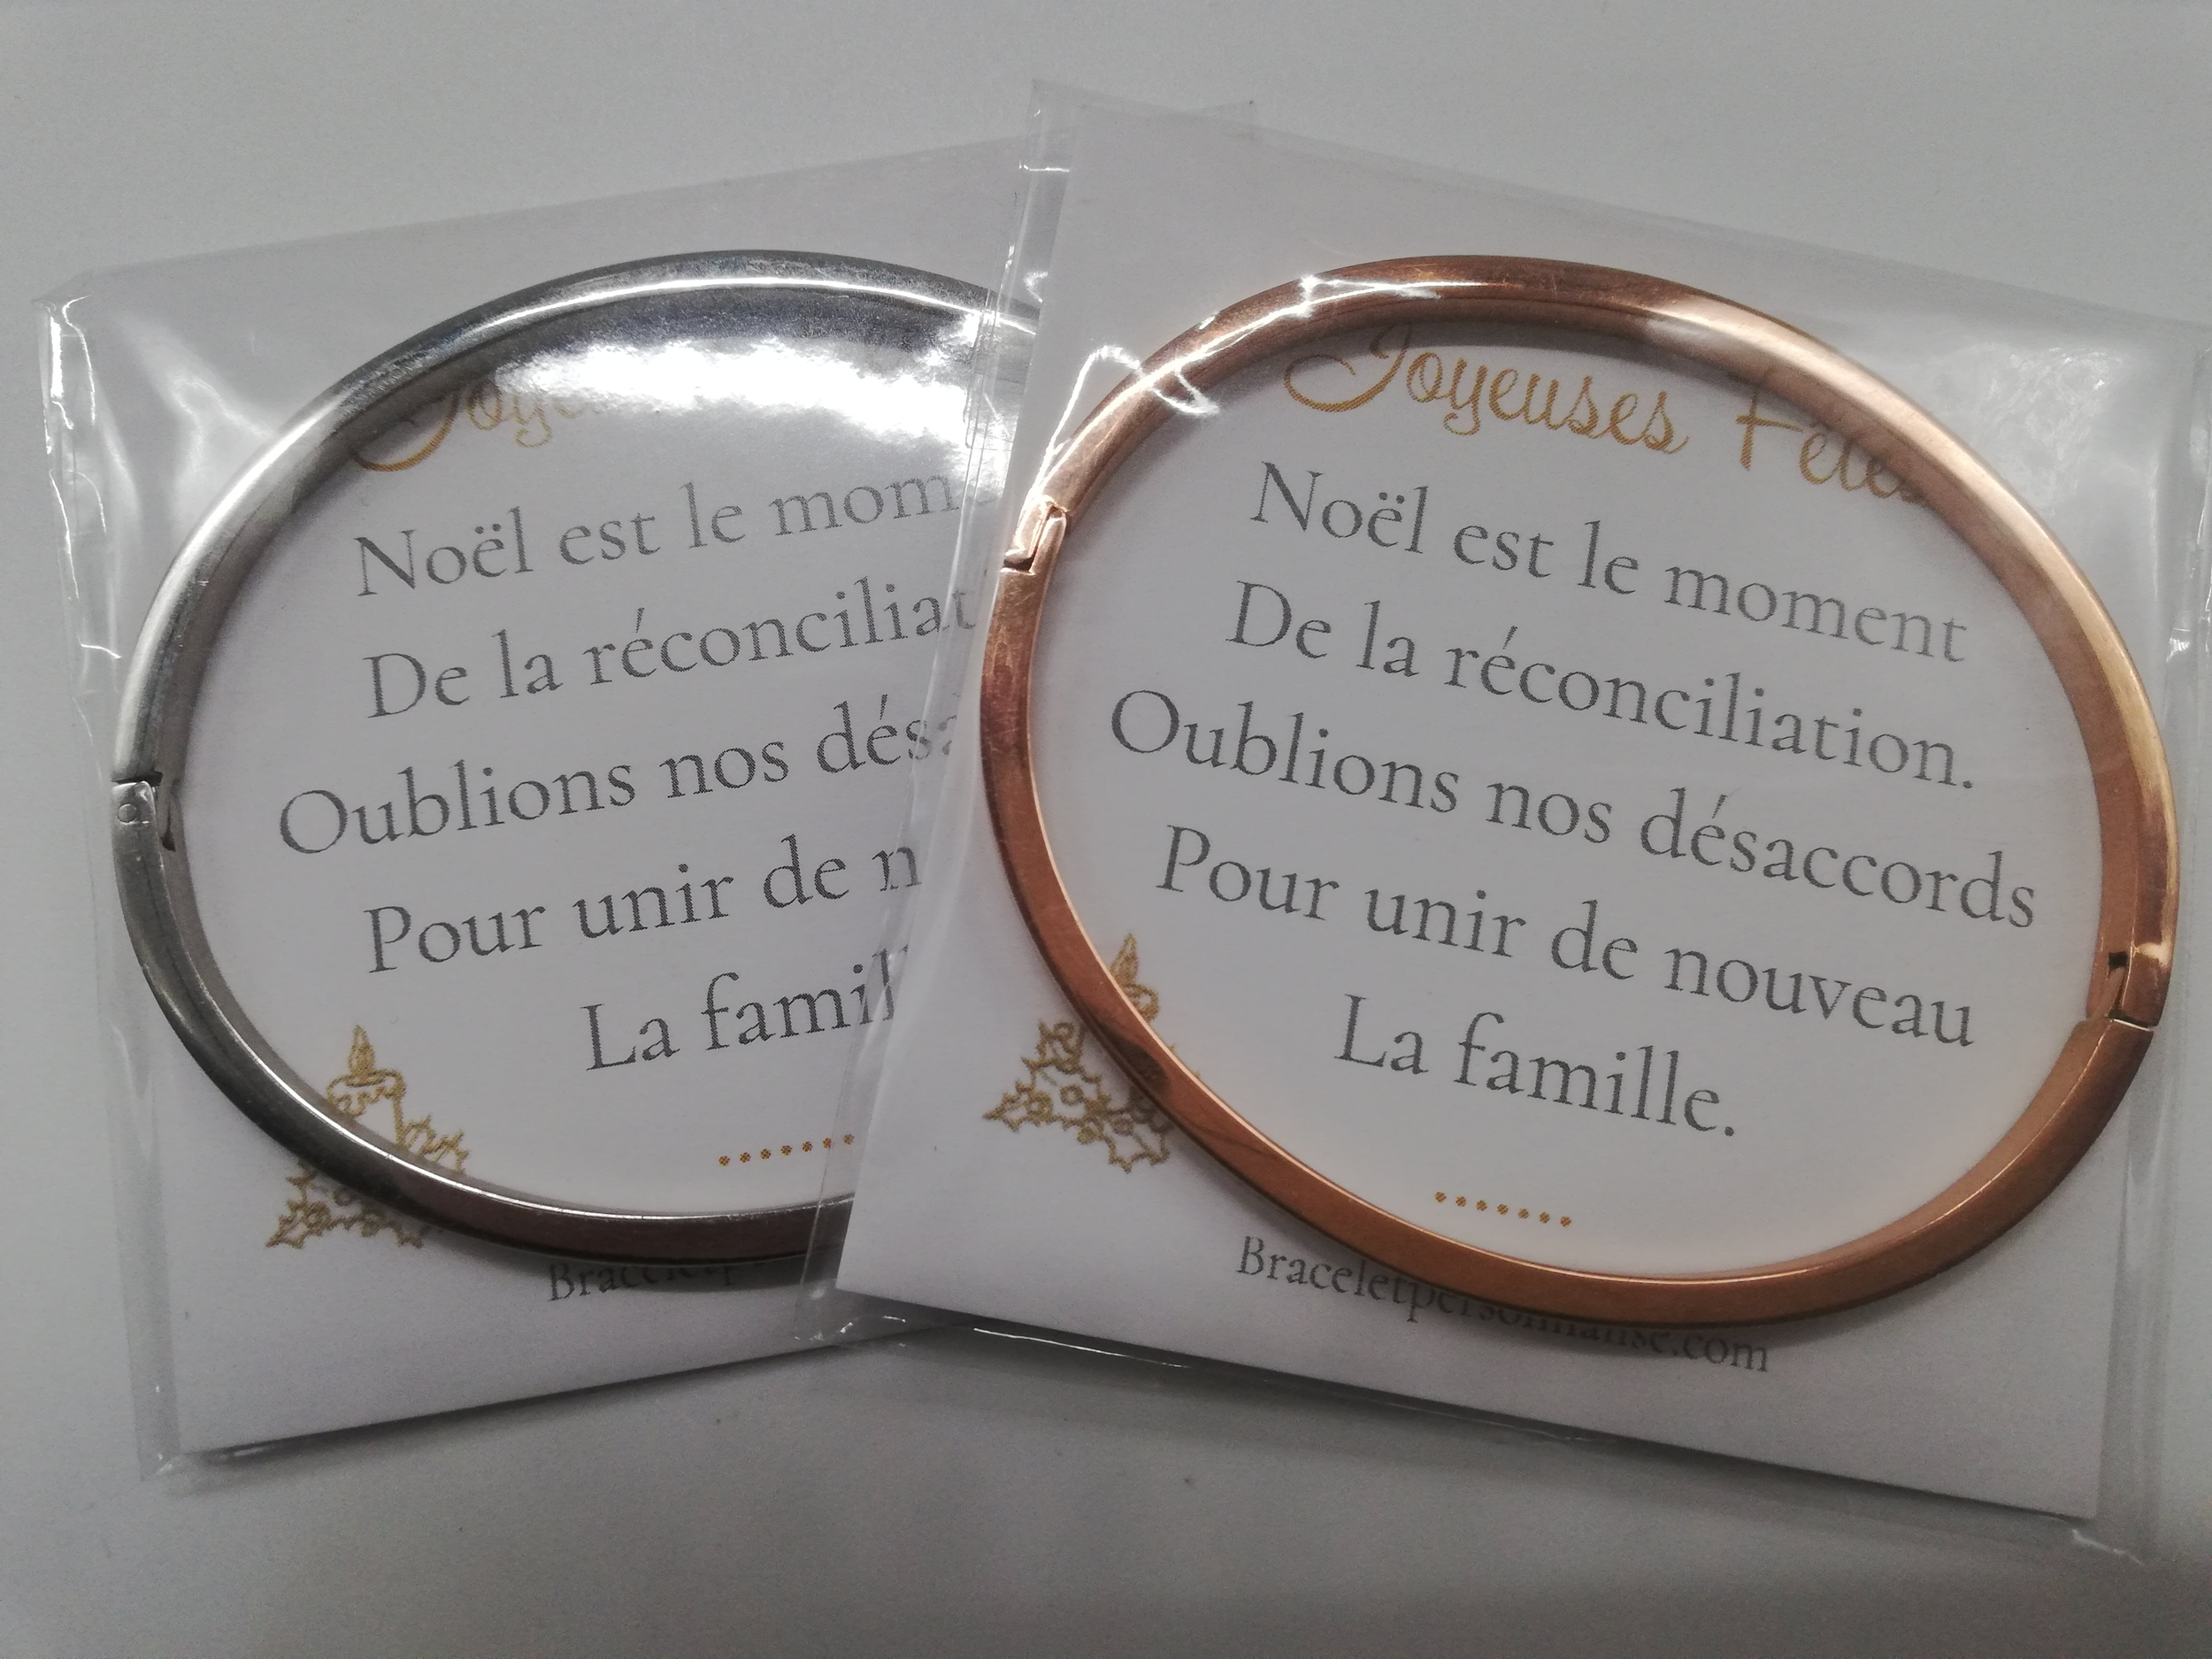 cadeau-de-noel-tata-bracelets-personnalises-et-mots-de-reconciliation-sur-une-carte-de-voeux-pour-les-fetes